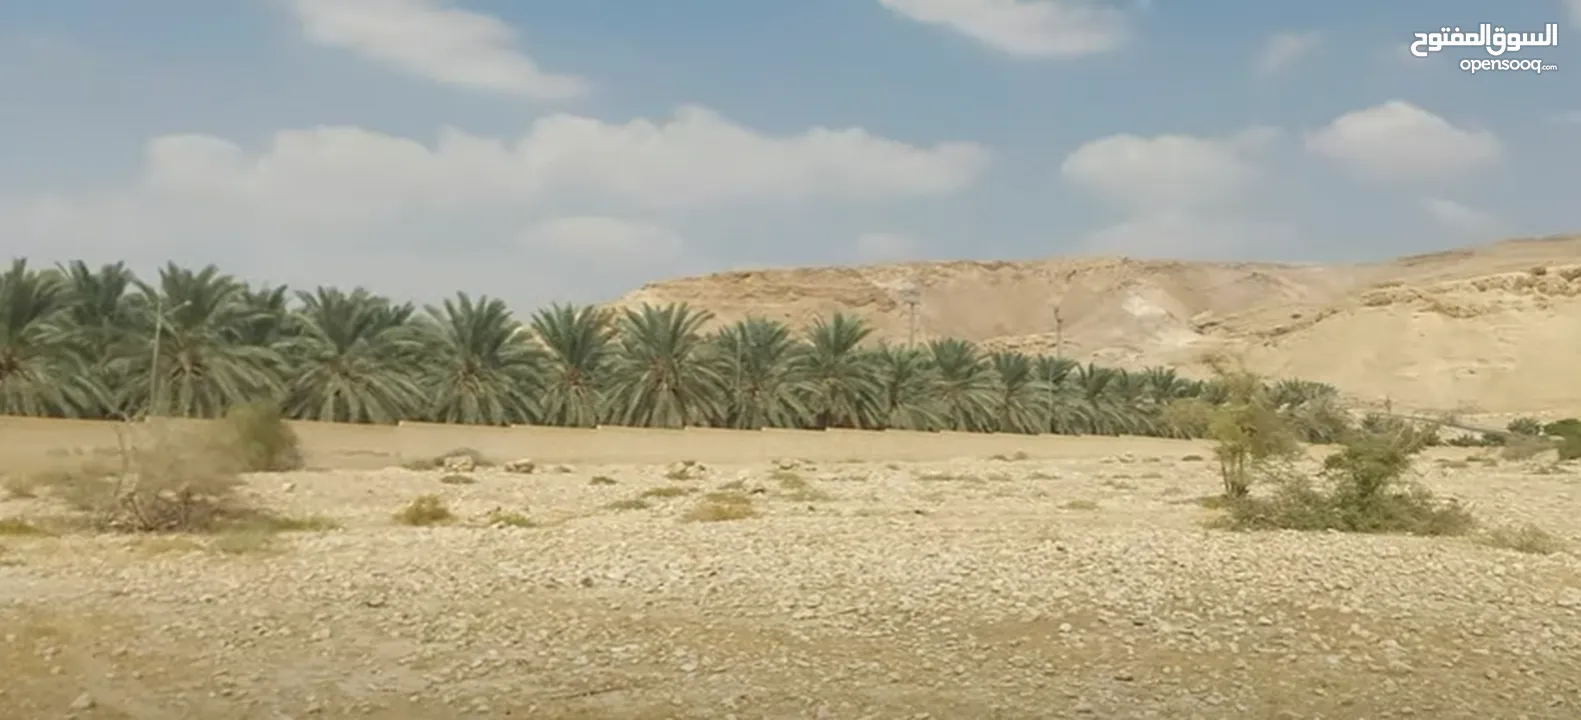 مطلوب أرض للبيع 600 م او مساحات اخرى لشاليه في مناطق الغور والبحر الميت